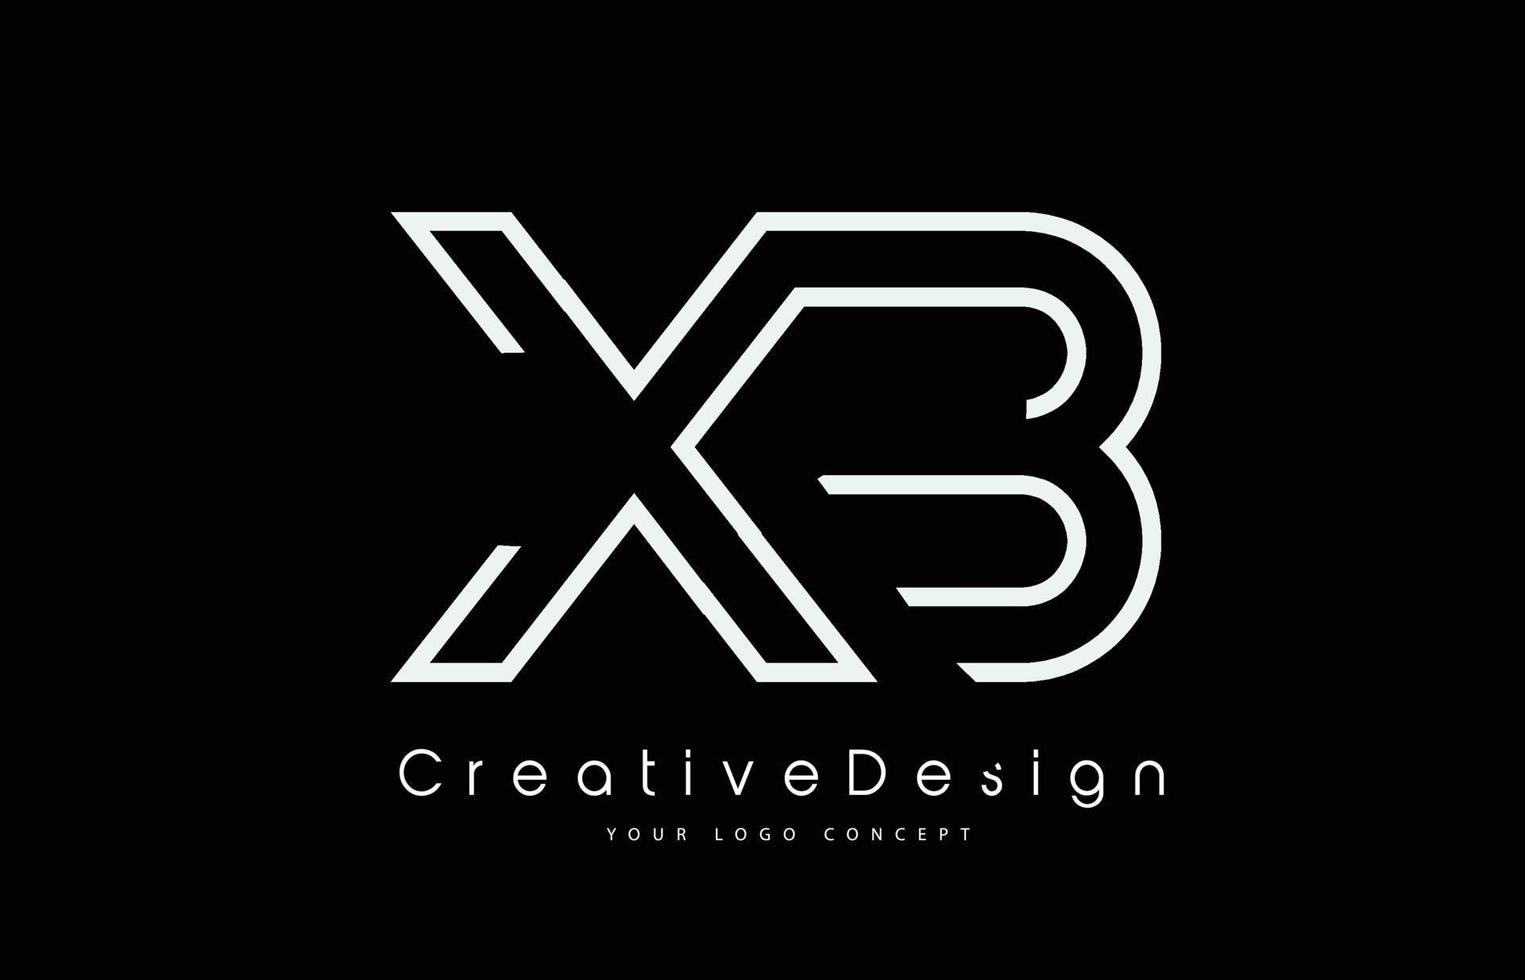 diseño del logotipo de la letra xb xb en colores blancos. vector